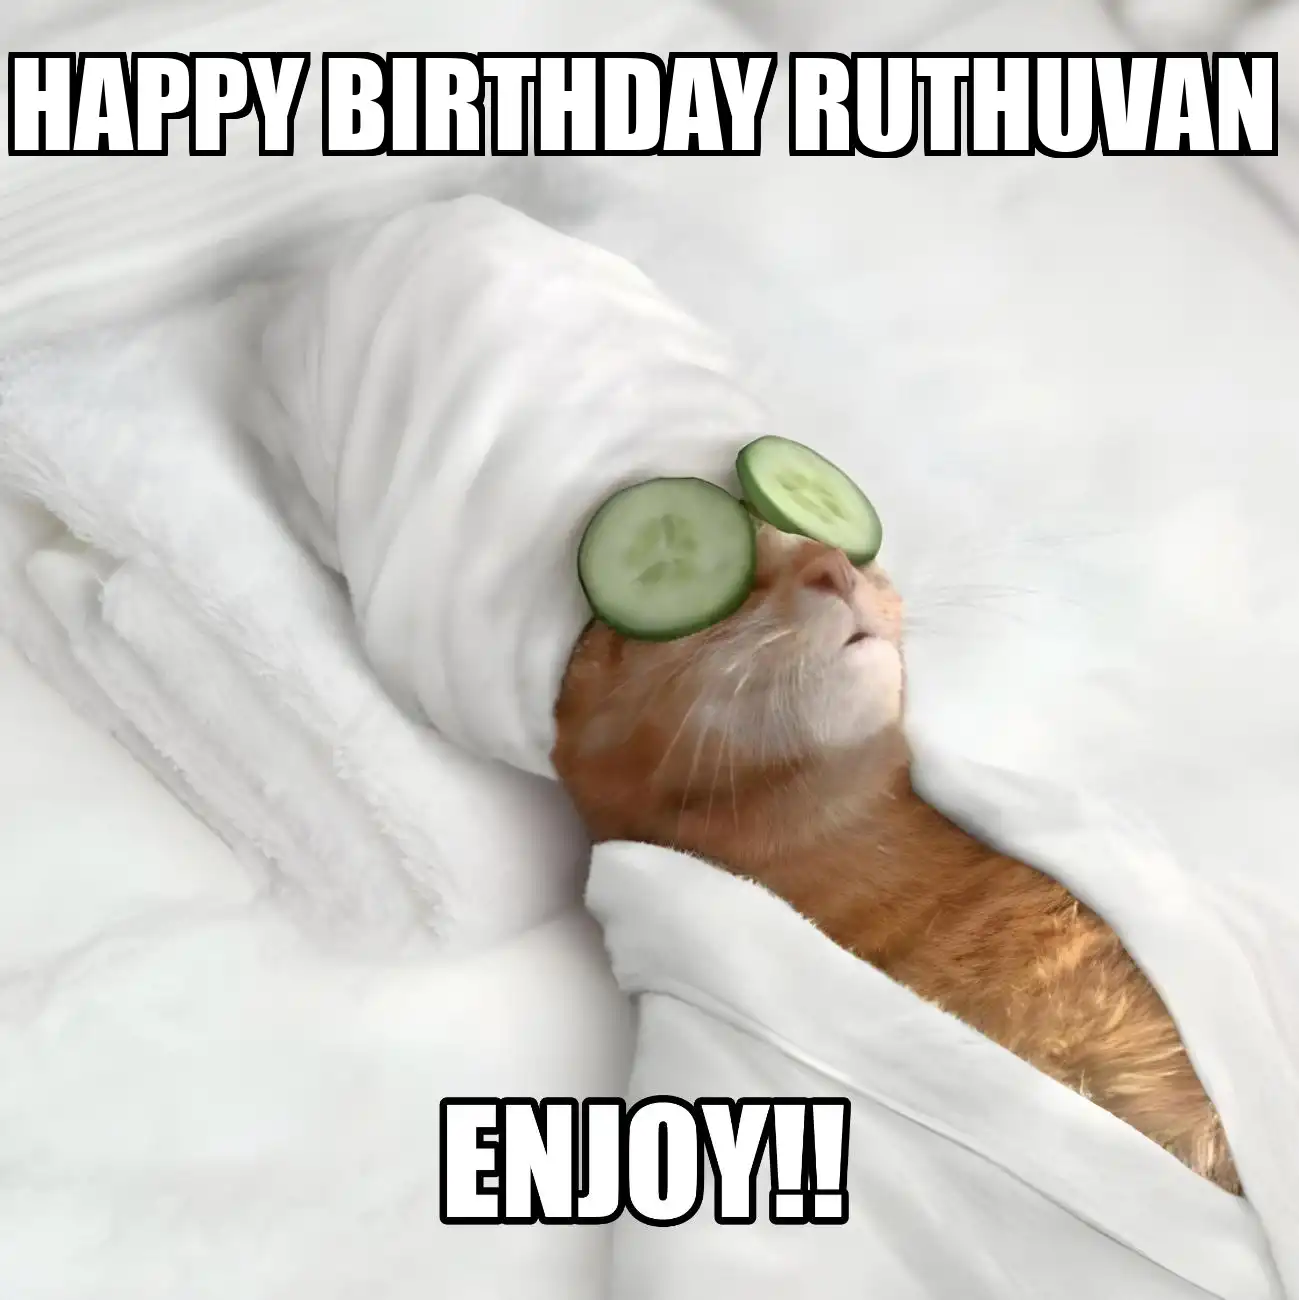 Happy Birthday Ruthuvan Enjoy Cat Meme